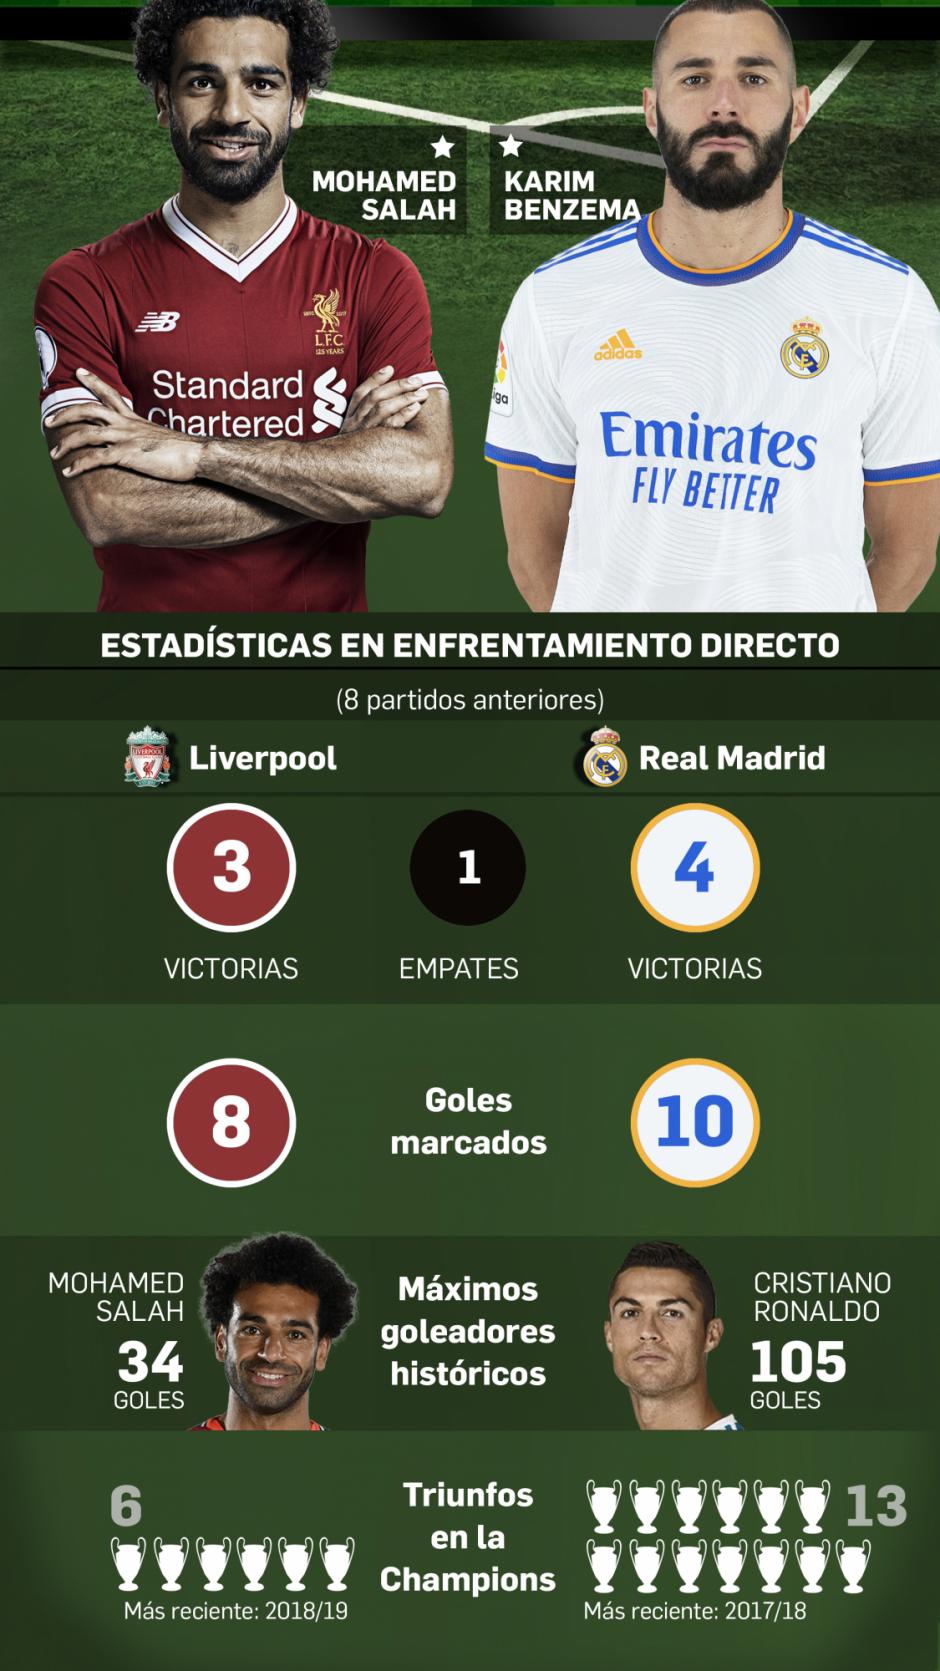 Salah y Benzema serán dos de los jugadores que más focos acaparen